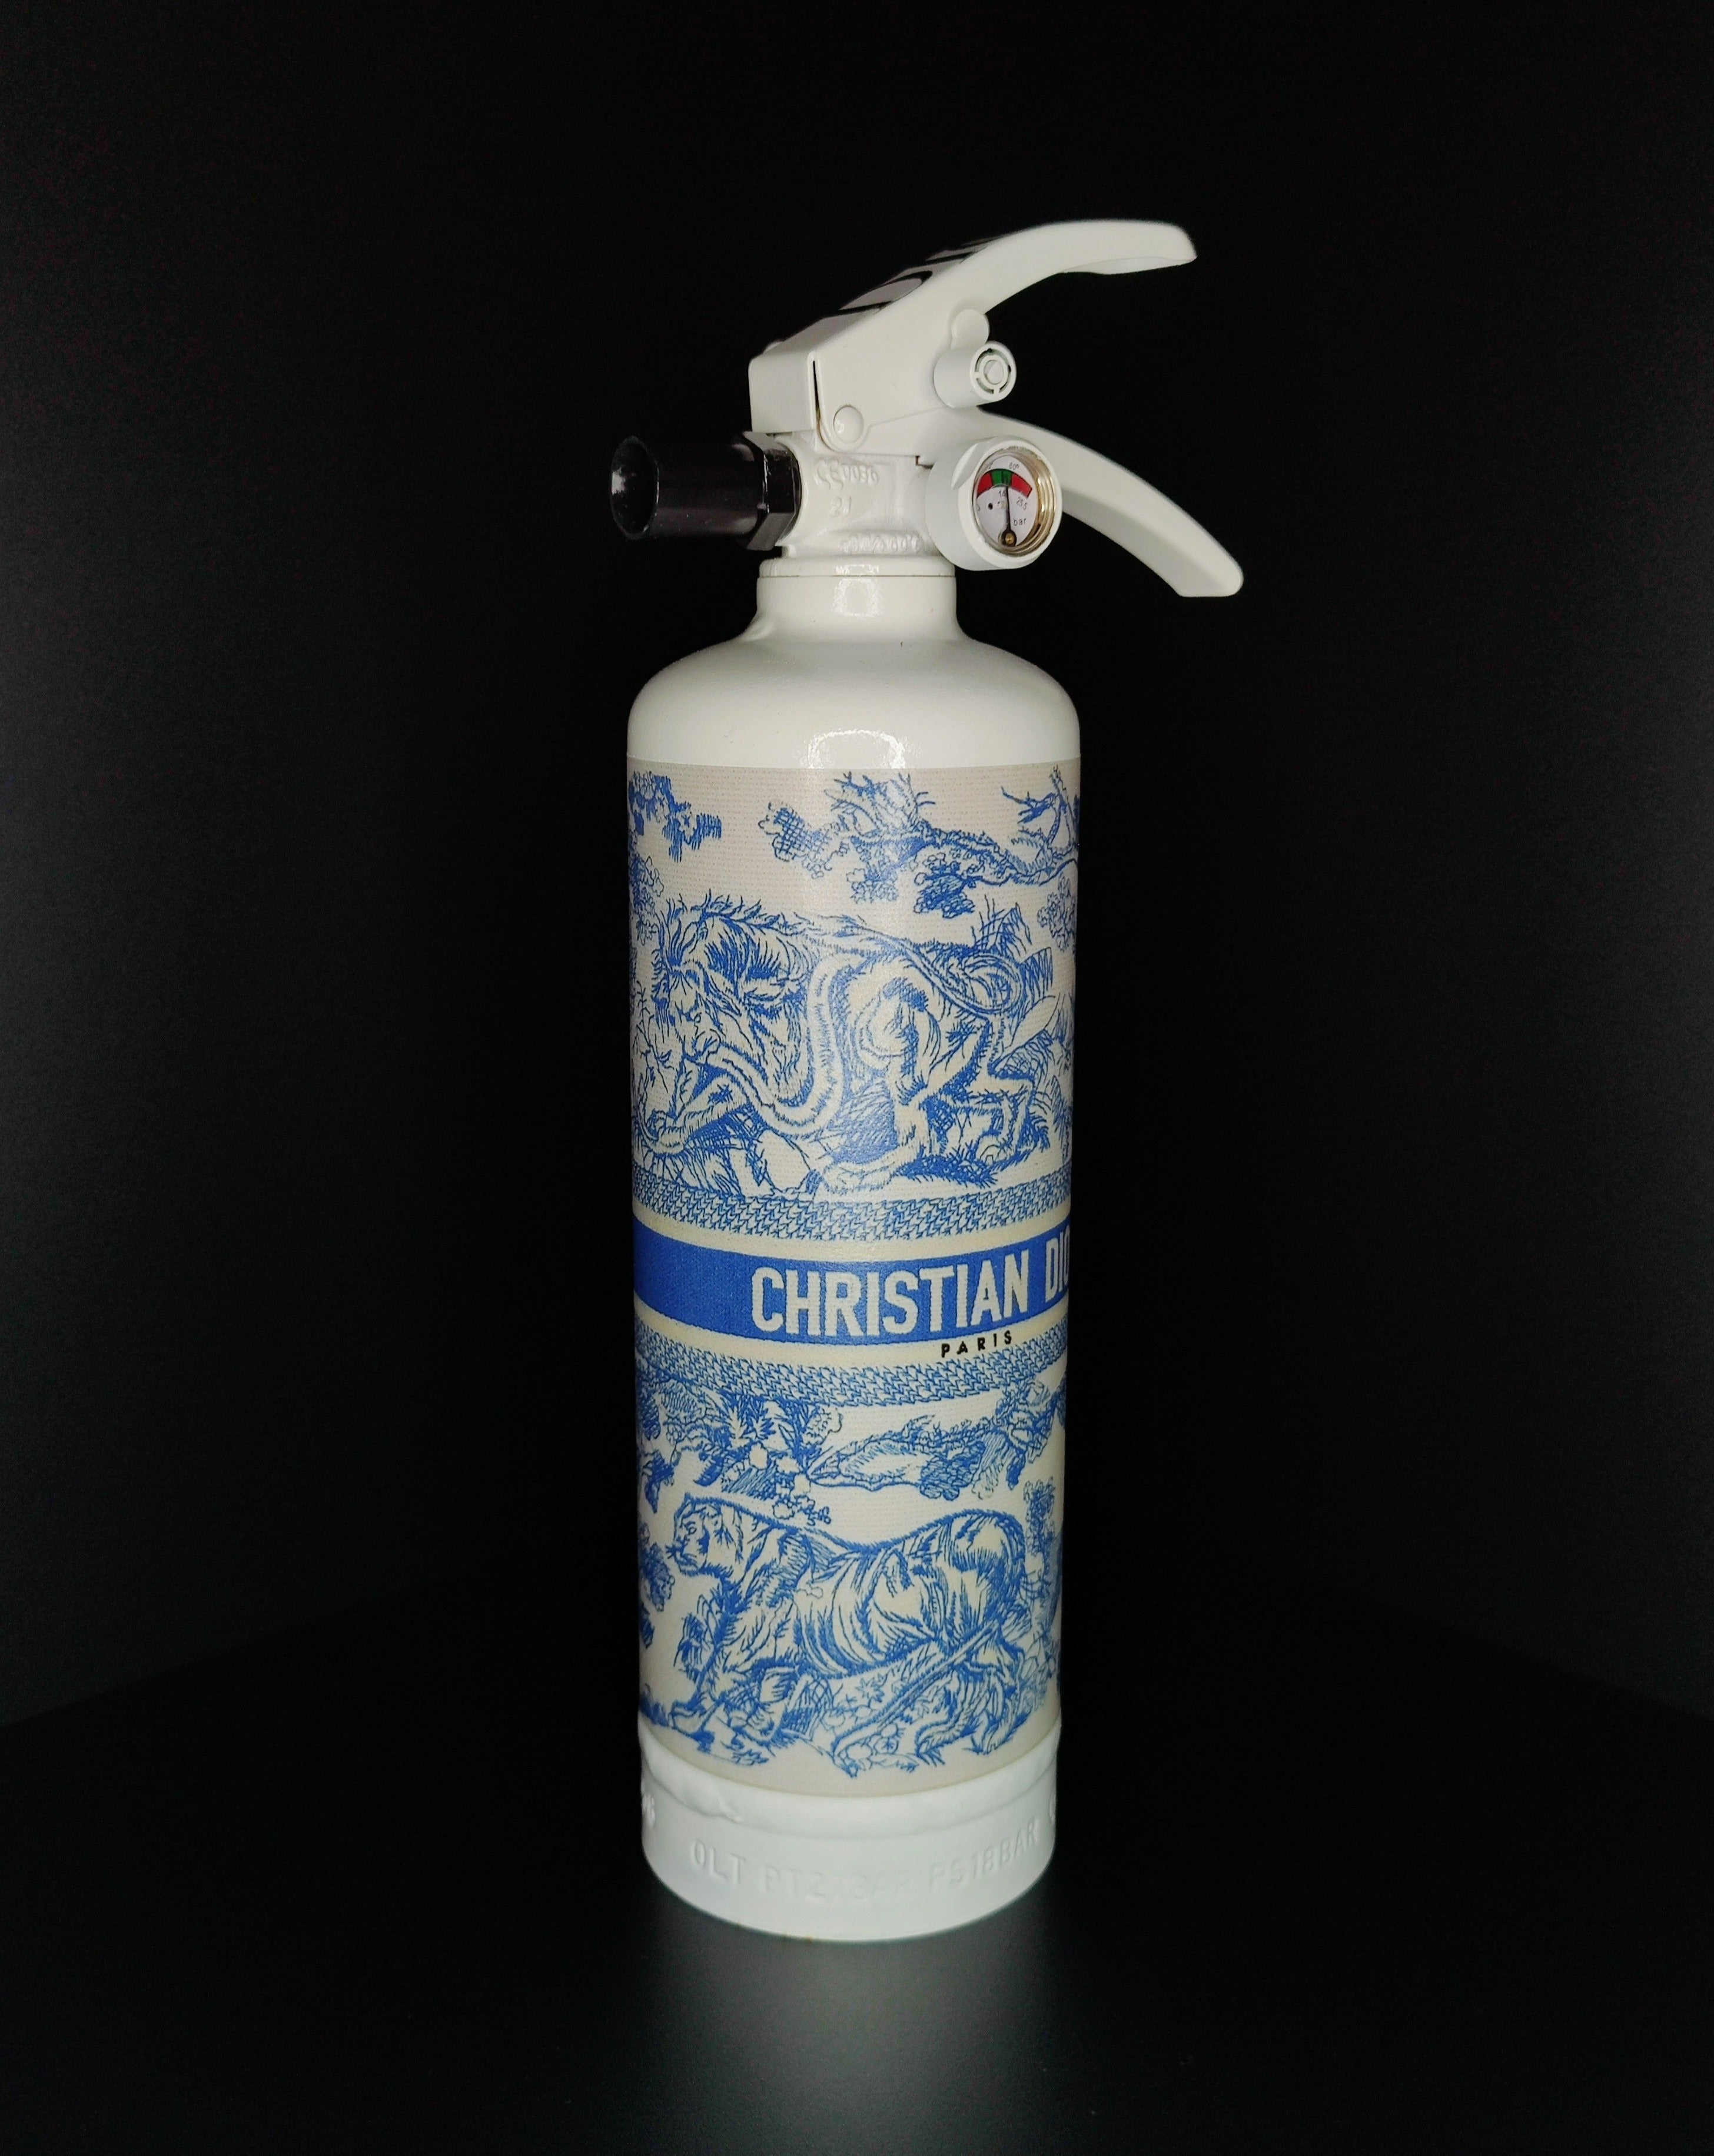 Dior Fire Extinguisher